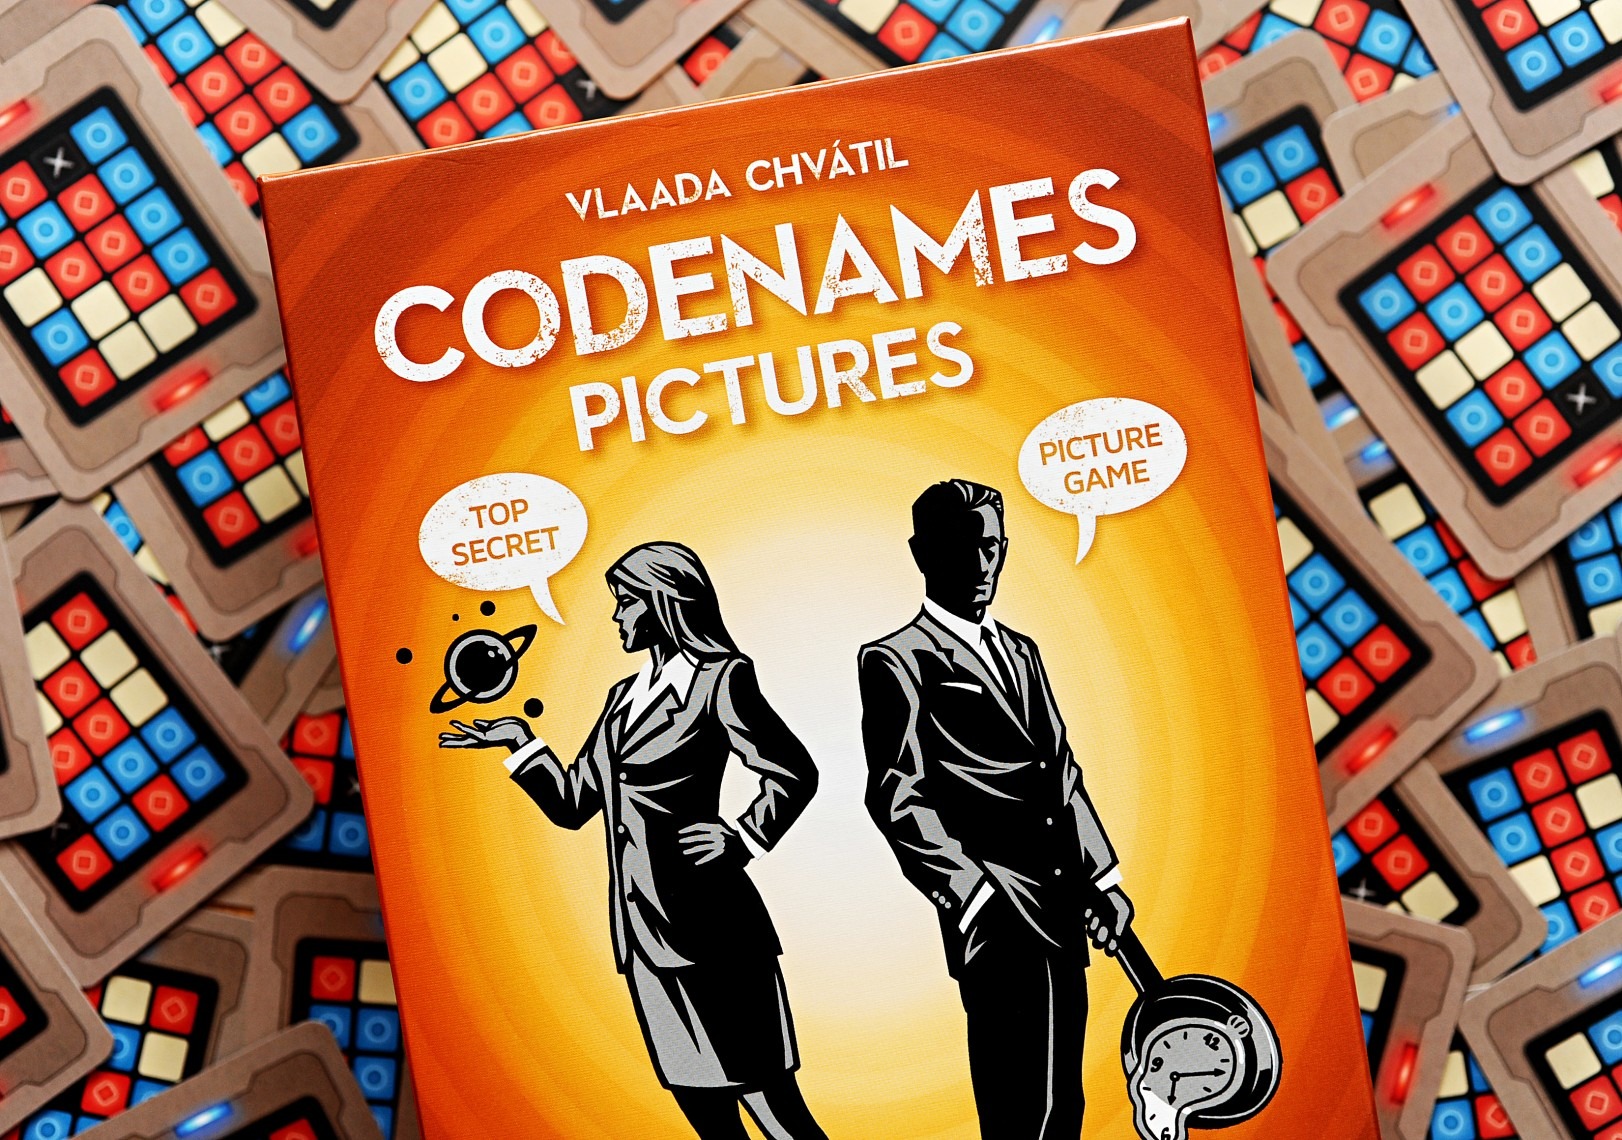 Code name game. Коднеймс. Коденамес игра. Игра кодовые имена. Код Неймс картинки.